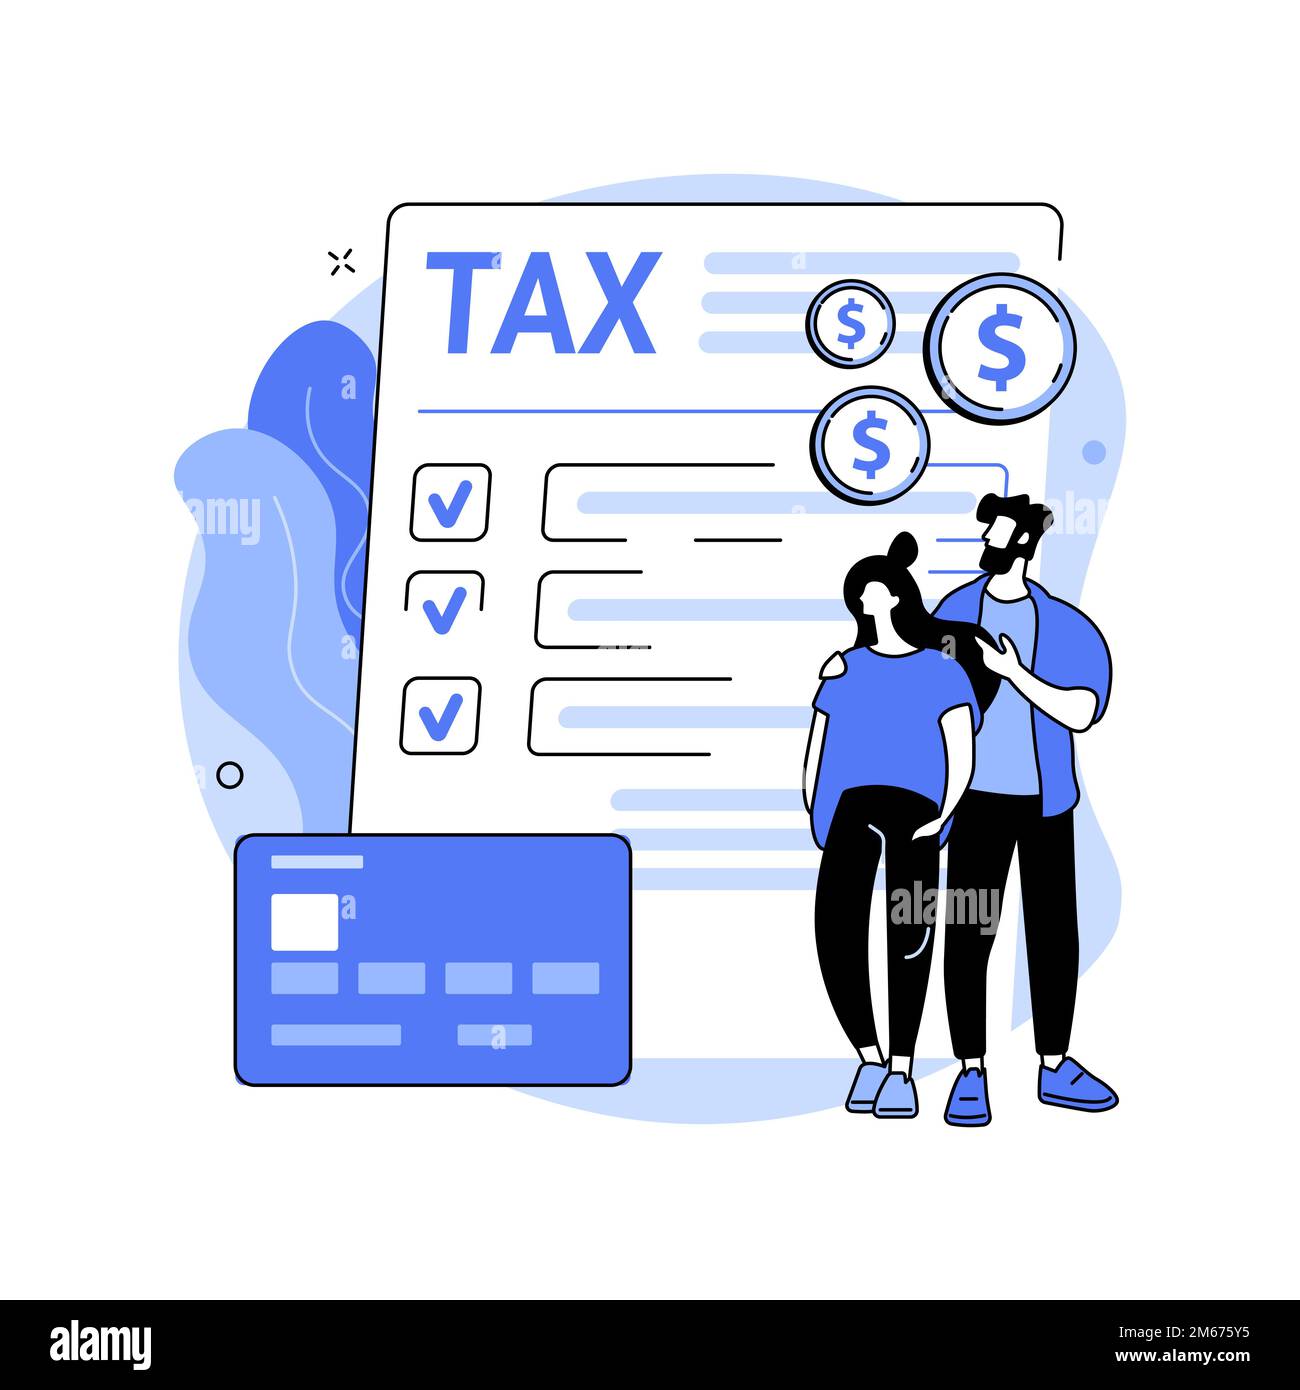 Illustrazione vettoriale astratta dell'imposta sul reddito personale. Calcolo del budget, modulo IRS online, conto bancario, pagamento della fattura, ricezione della fattura, economico Illustrazione Vettoriale